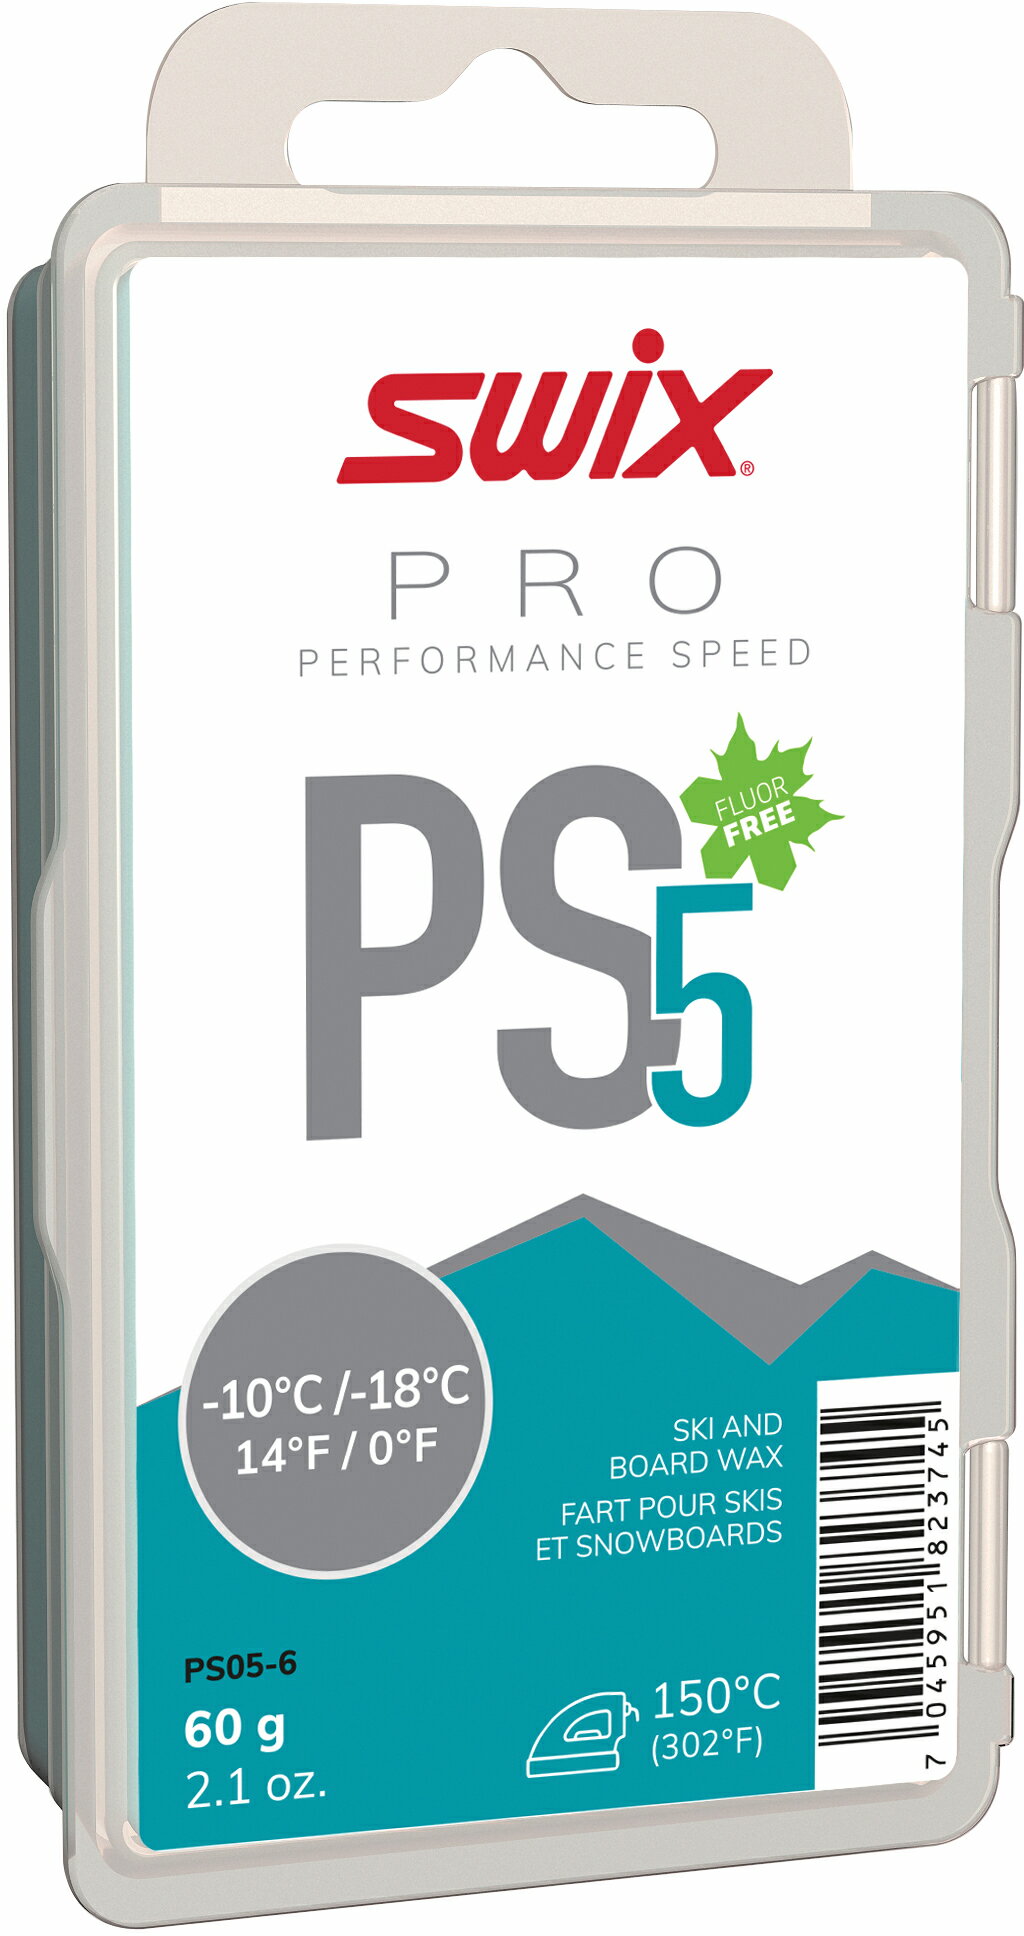 スウィックス SWIX PRO PERFORMANCE SPEED PS PS5ターコイズ 60g PS05-6